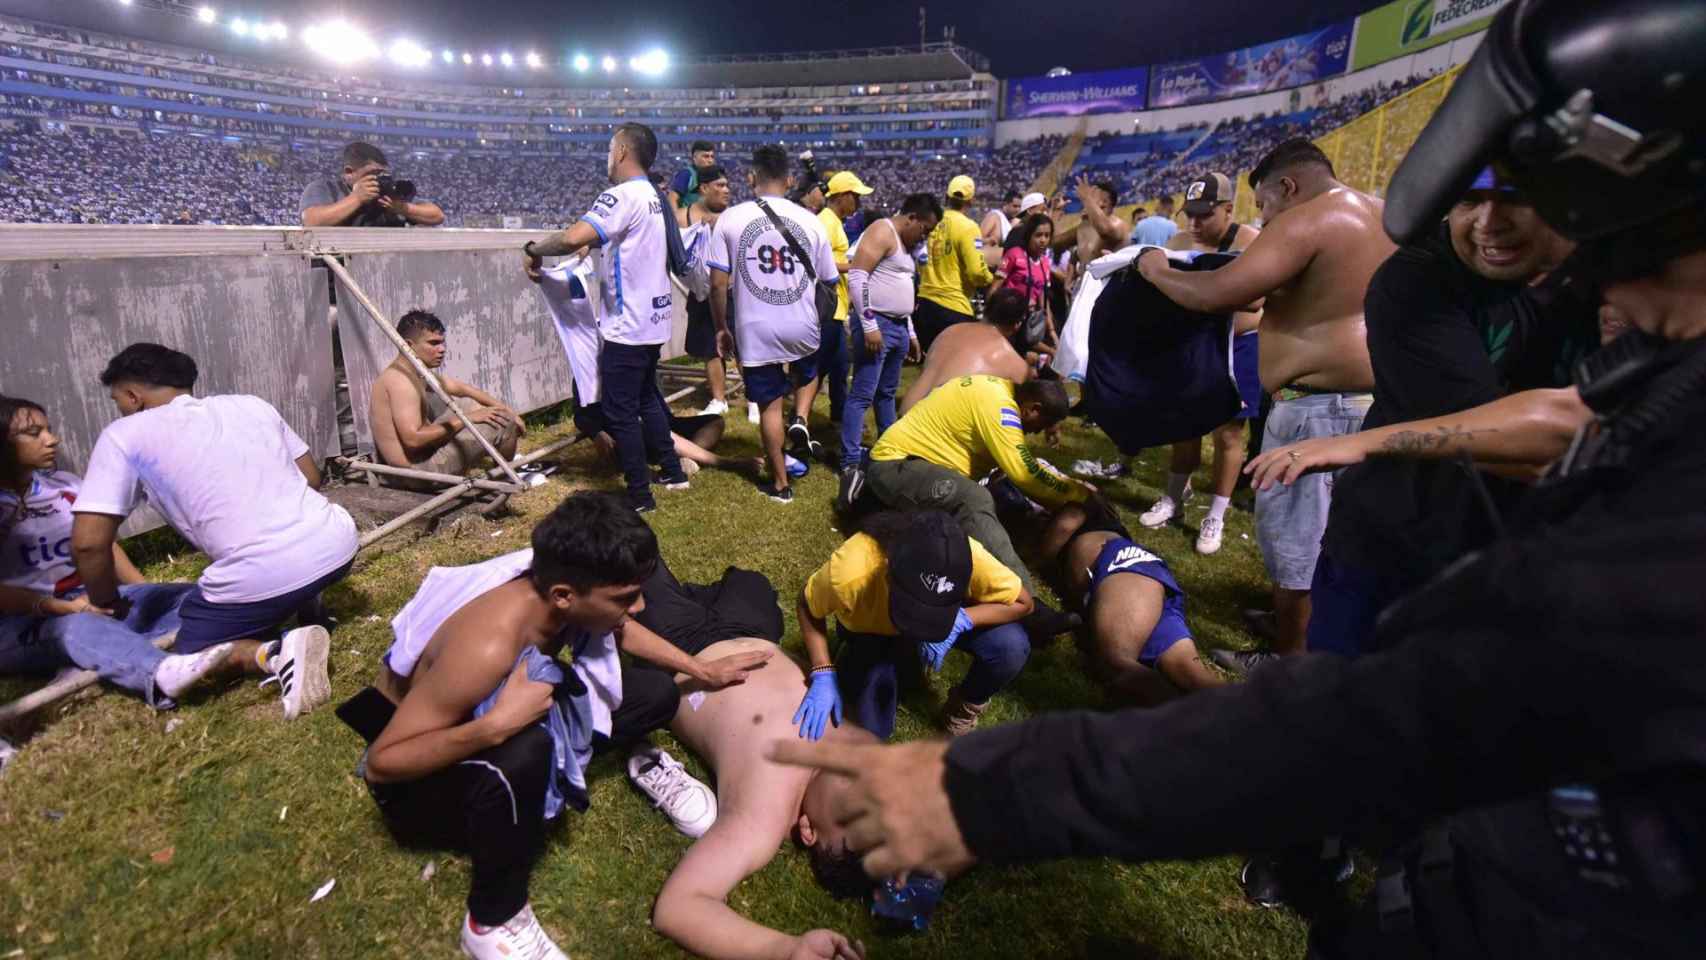 Aficinados auxilian a otros tras una estampida en un estadio de fútbol en El Salvador